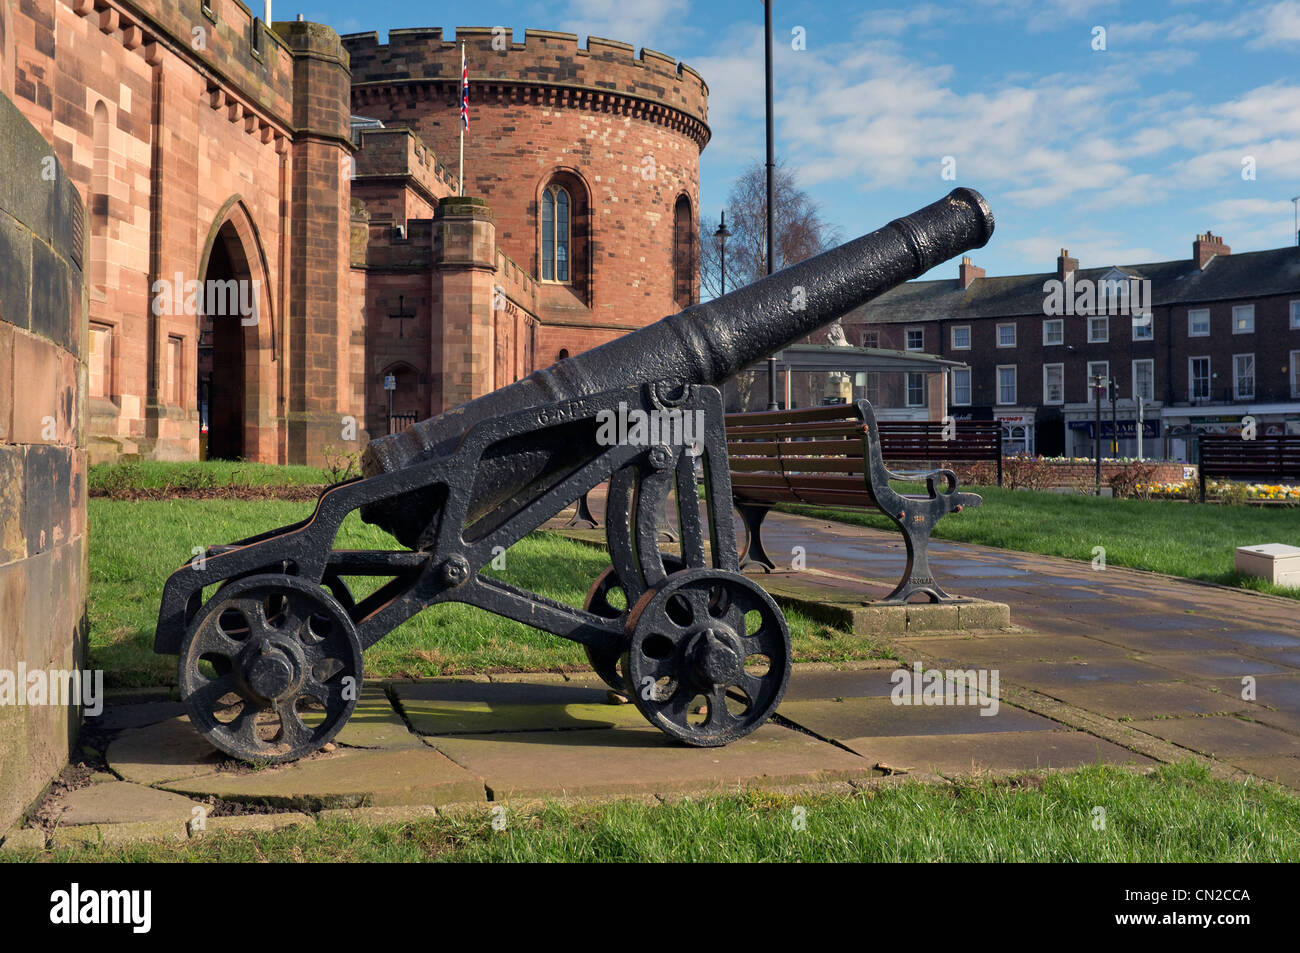 Canon situated outside the Citadel Carlisle City center, Cumbria, United Kingdom Stock Photo